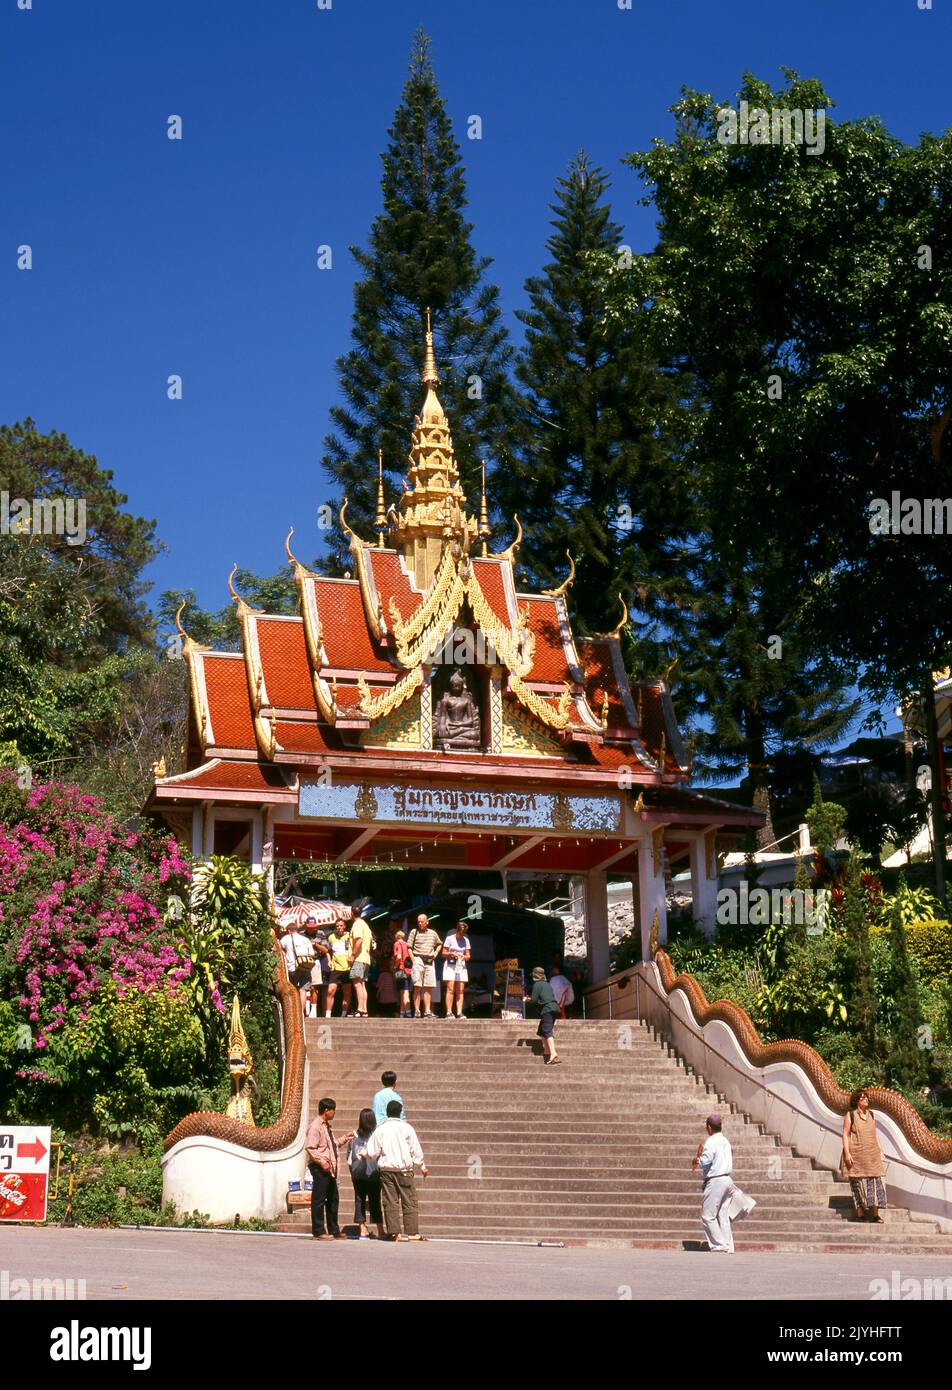 Thailand: Der Eingang zum Wat Phrathat Doi Suthep, einem buddhistischen Tempel der Theravada, der sich am Doi Suthep (Suthep-Berg) befindet und die Stadt Chiang Mai überblickt. Der prächtige vergoldete Chedi aus dem 16.. Jahrhundert bietet einen herrlichen Blick über das Tal Chiang Mai bis zum Fluss Ping. König Mengrai gründete 1296 die Stadt Chiang Mai (was "neue Stadt" bedeutet) und folgte Chiang Rai als Hauptstadt des Lanna-Königreichs nach. Stockfoto